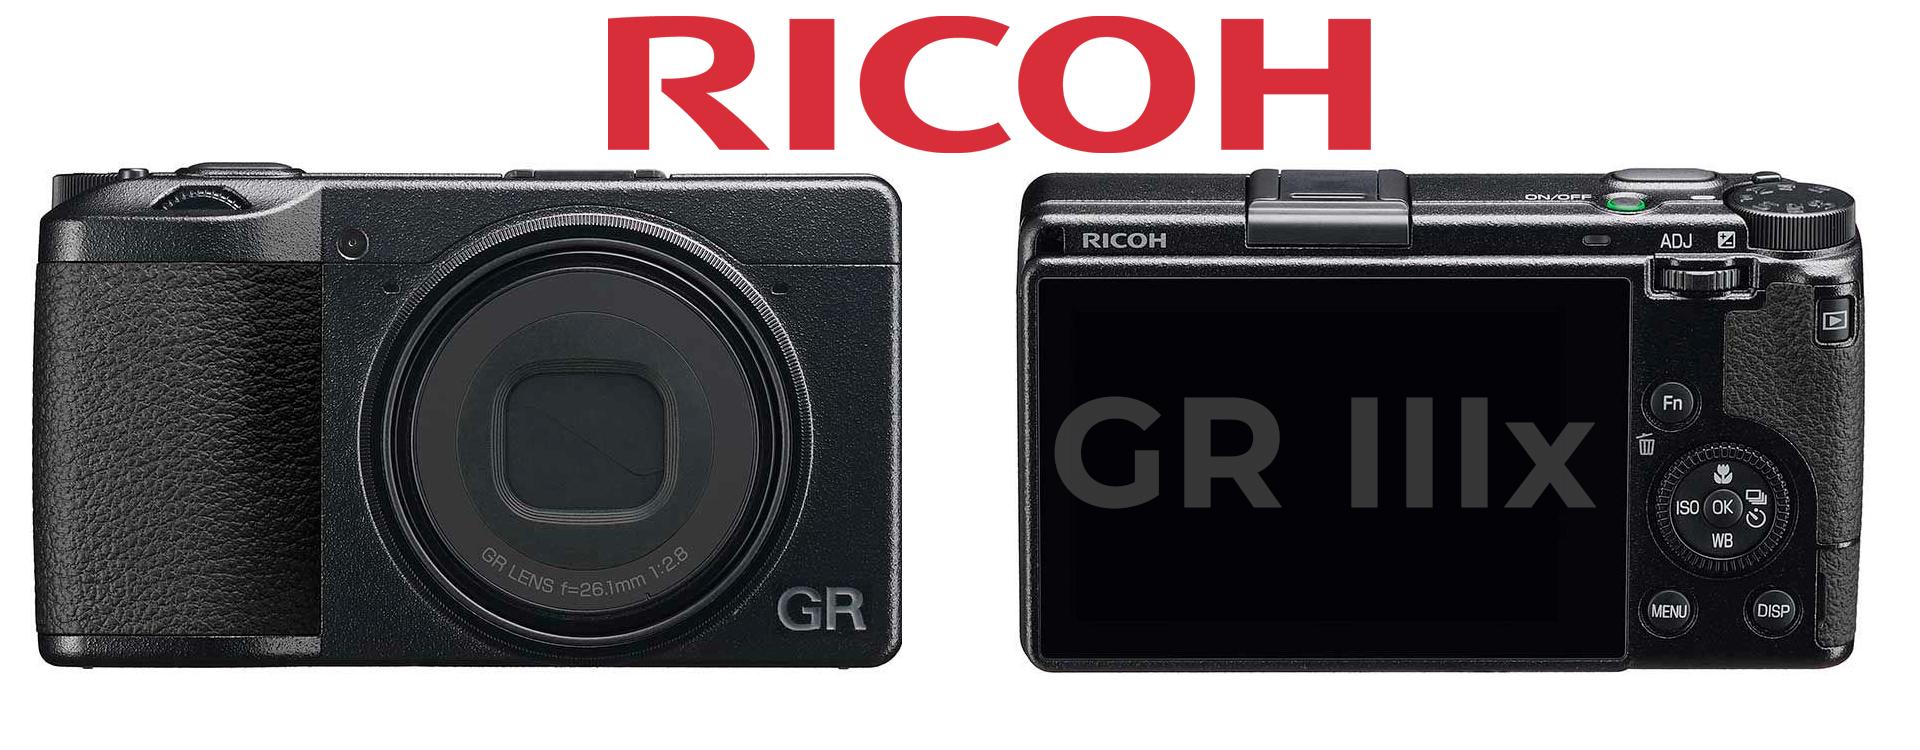 Ricoh GRIIIx, la nueva cámara compacta premium de Ricoh, lente de 40 mm F2.8 y un sensor CMOS de formato Aps-C de 24.24 MP